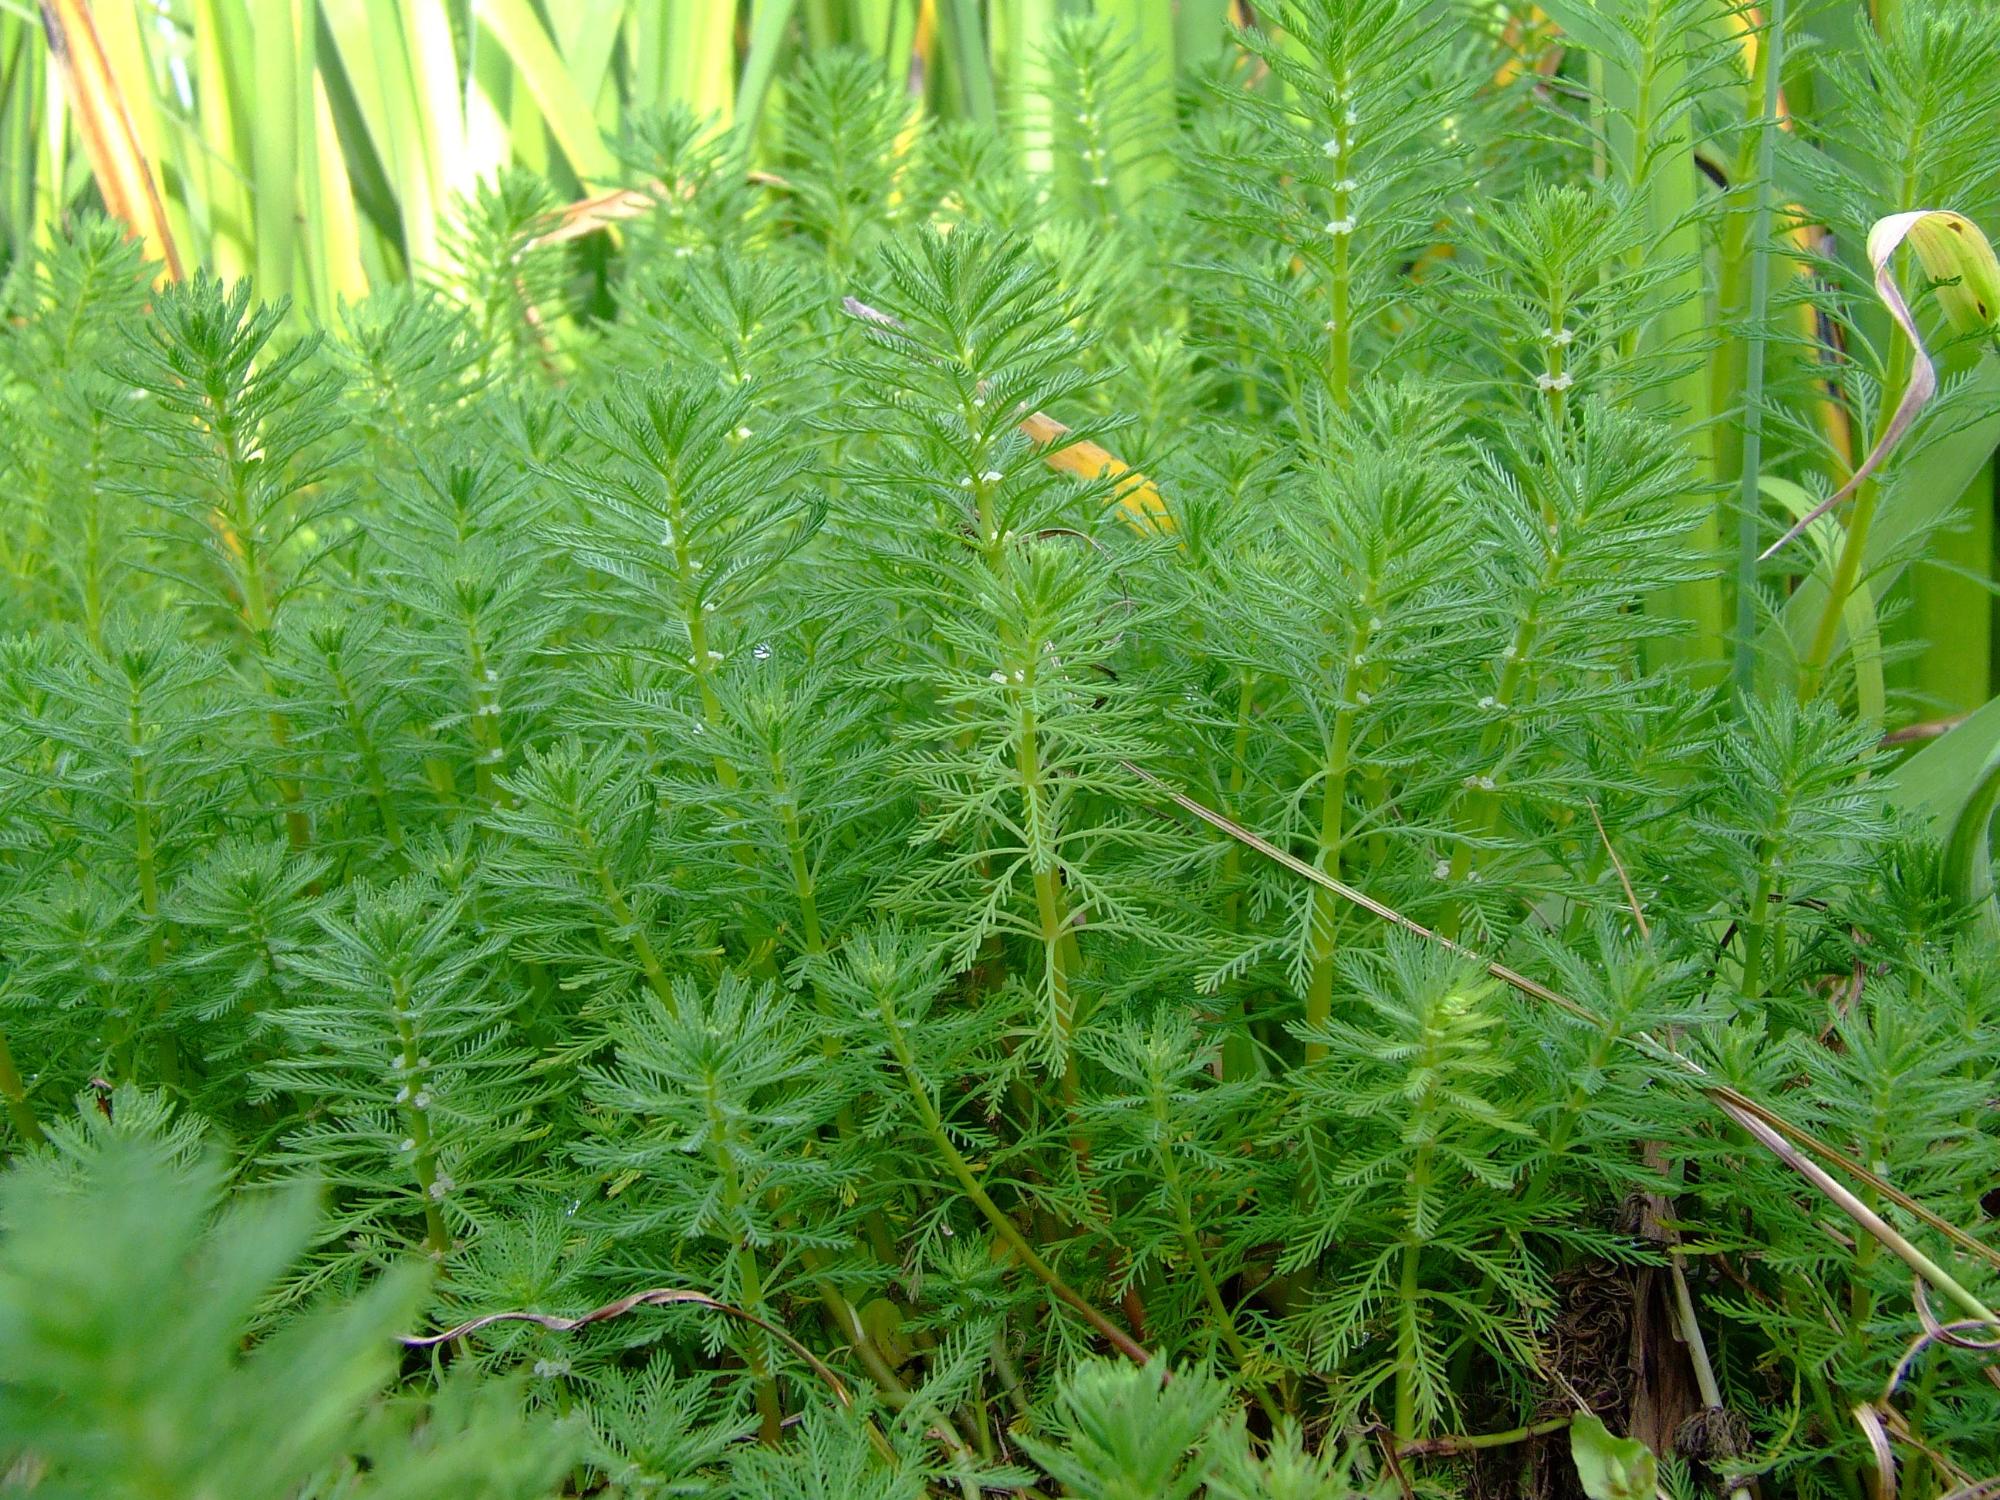 茎から緑色の葉が輪生状に生え一面がオオフサモの水草で覆われている写真